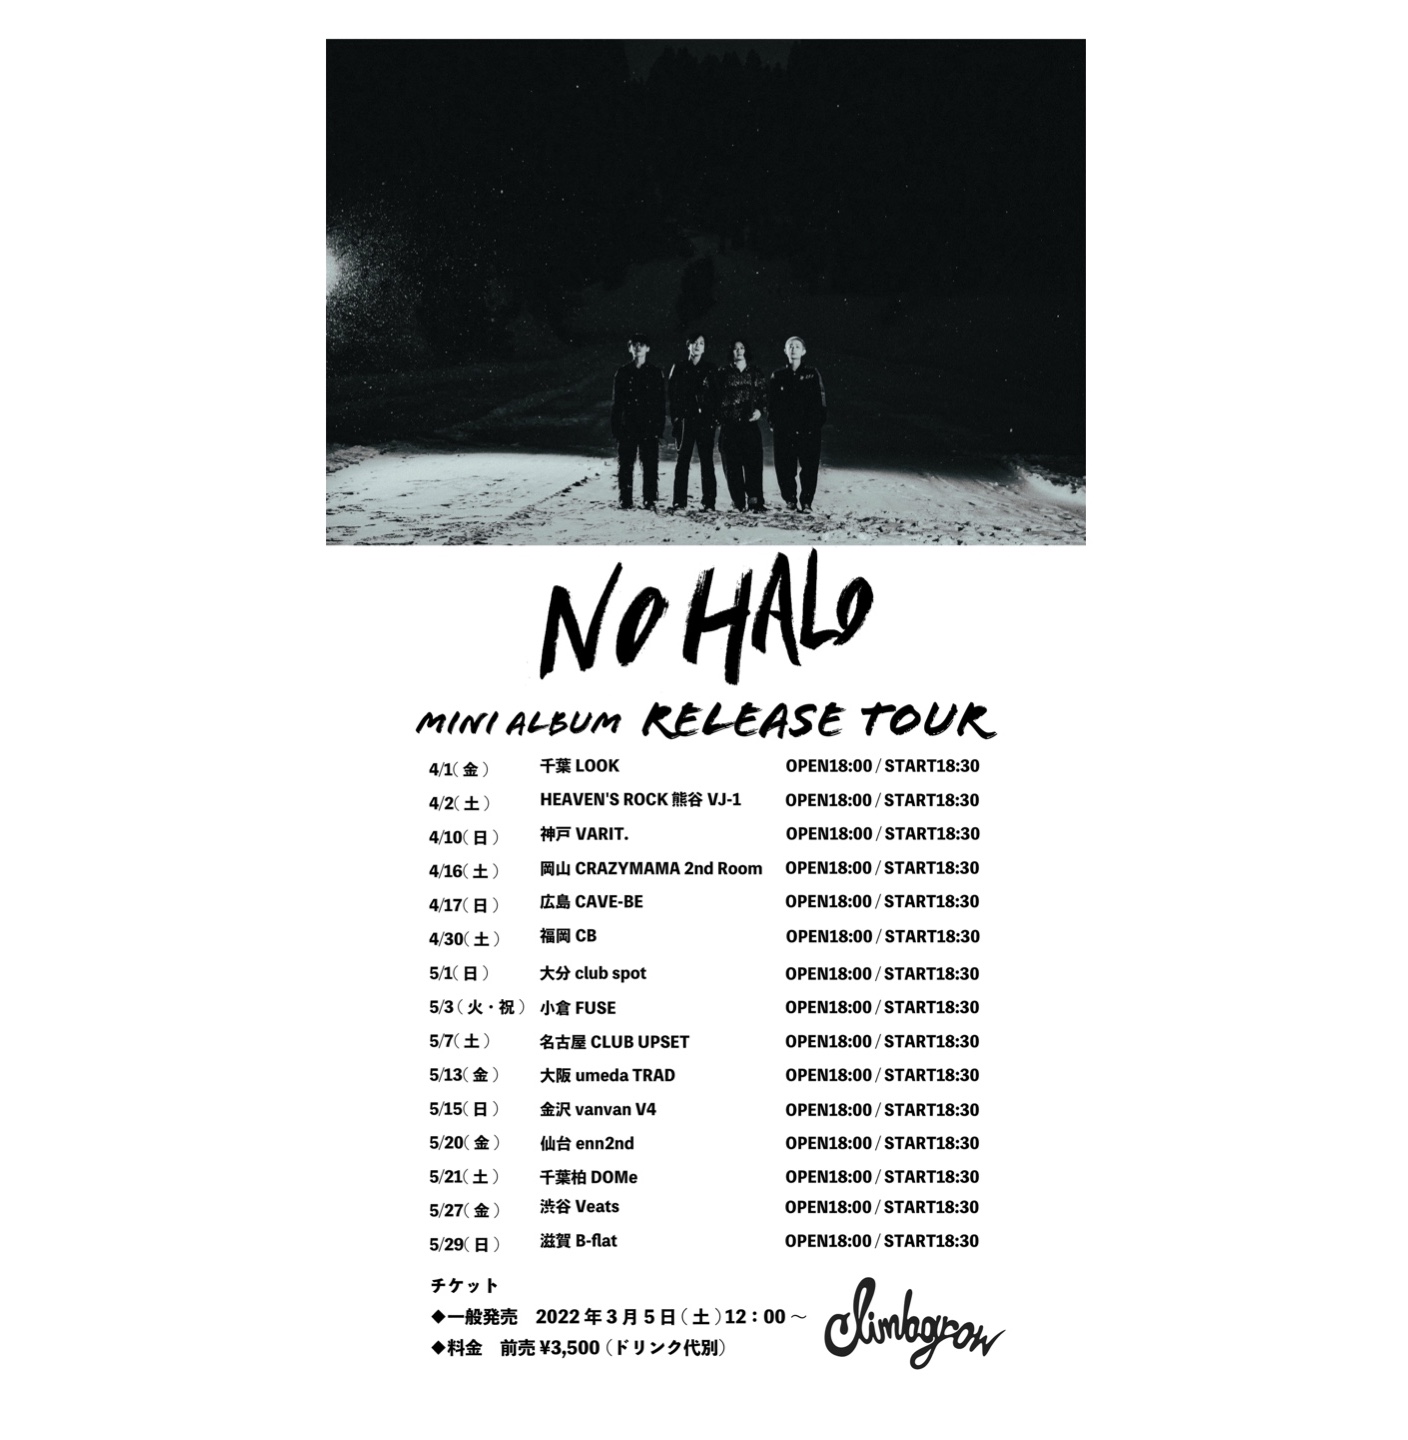 climbgrow　Mini Album”NO HALO”release　Tour